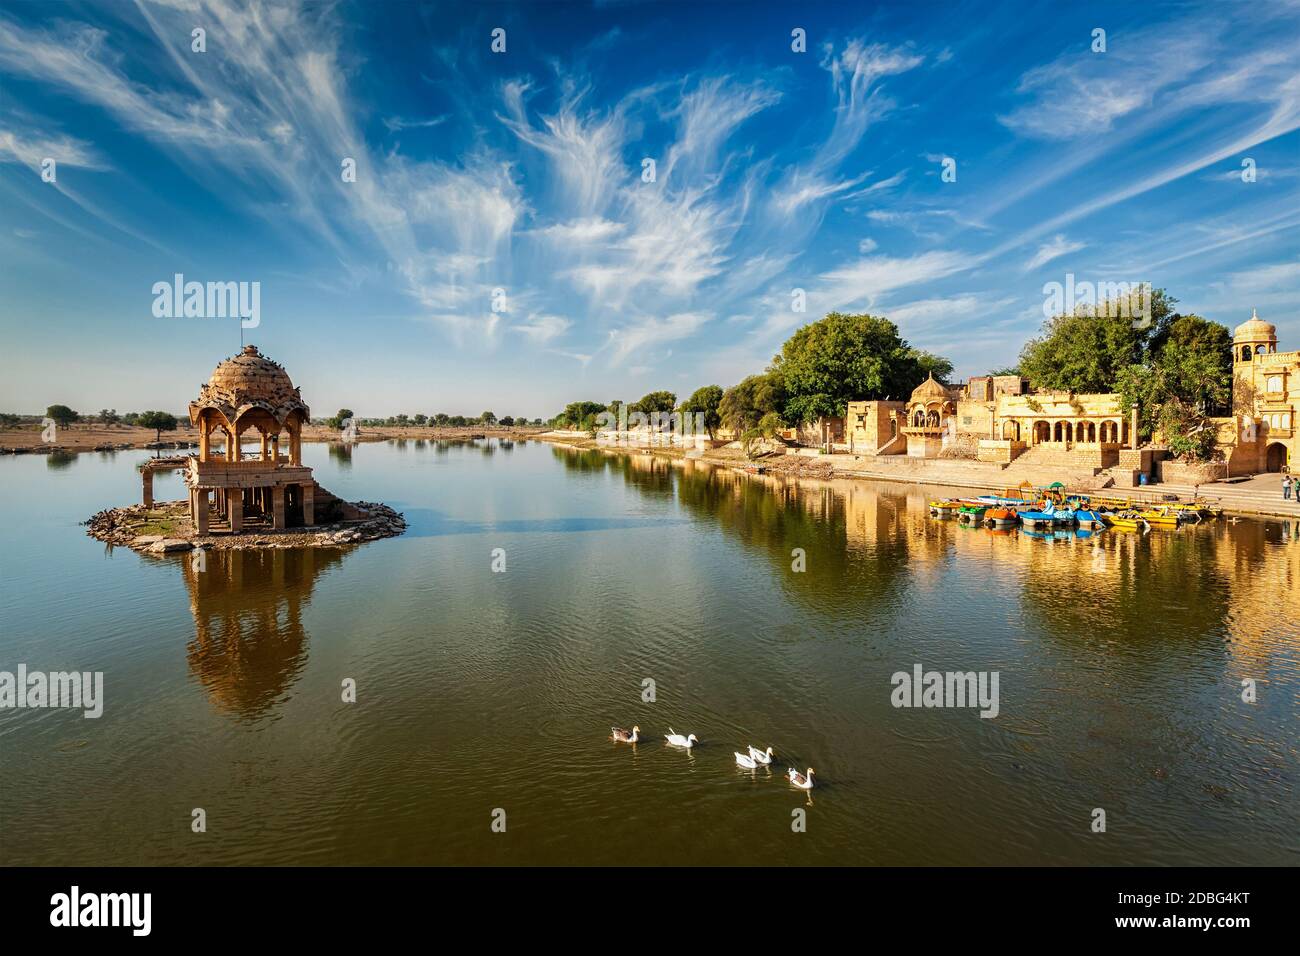 Indian landmark Gadi Sagar - artificial lake with white swans. Jaisalmer, Rajasthan, India Stock Photo